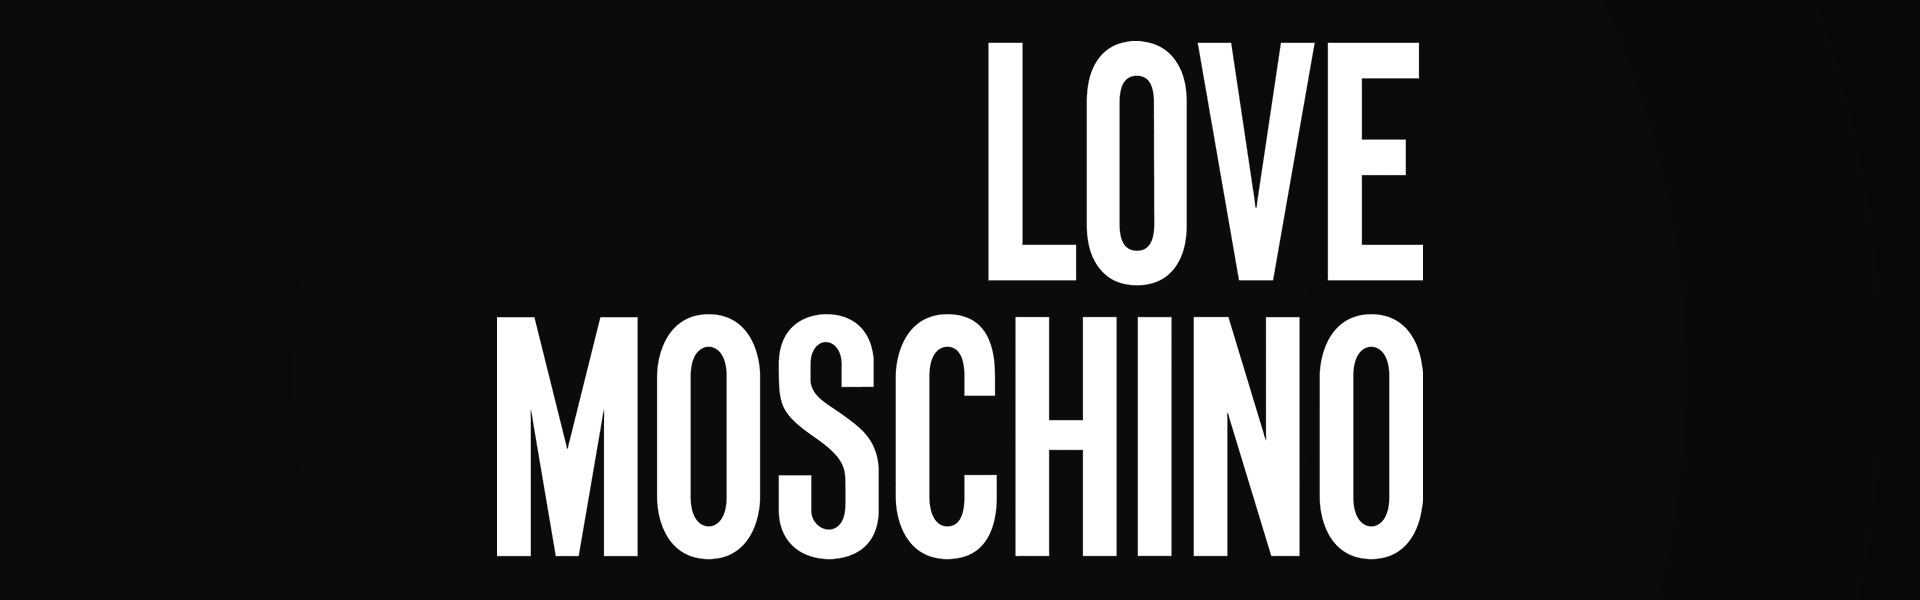 Love Moschino naisten olkalaukku, keltainen 